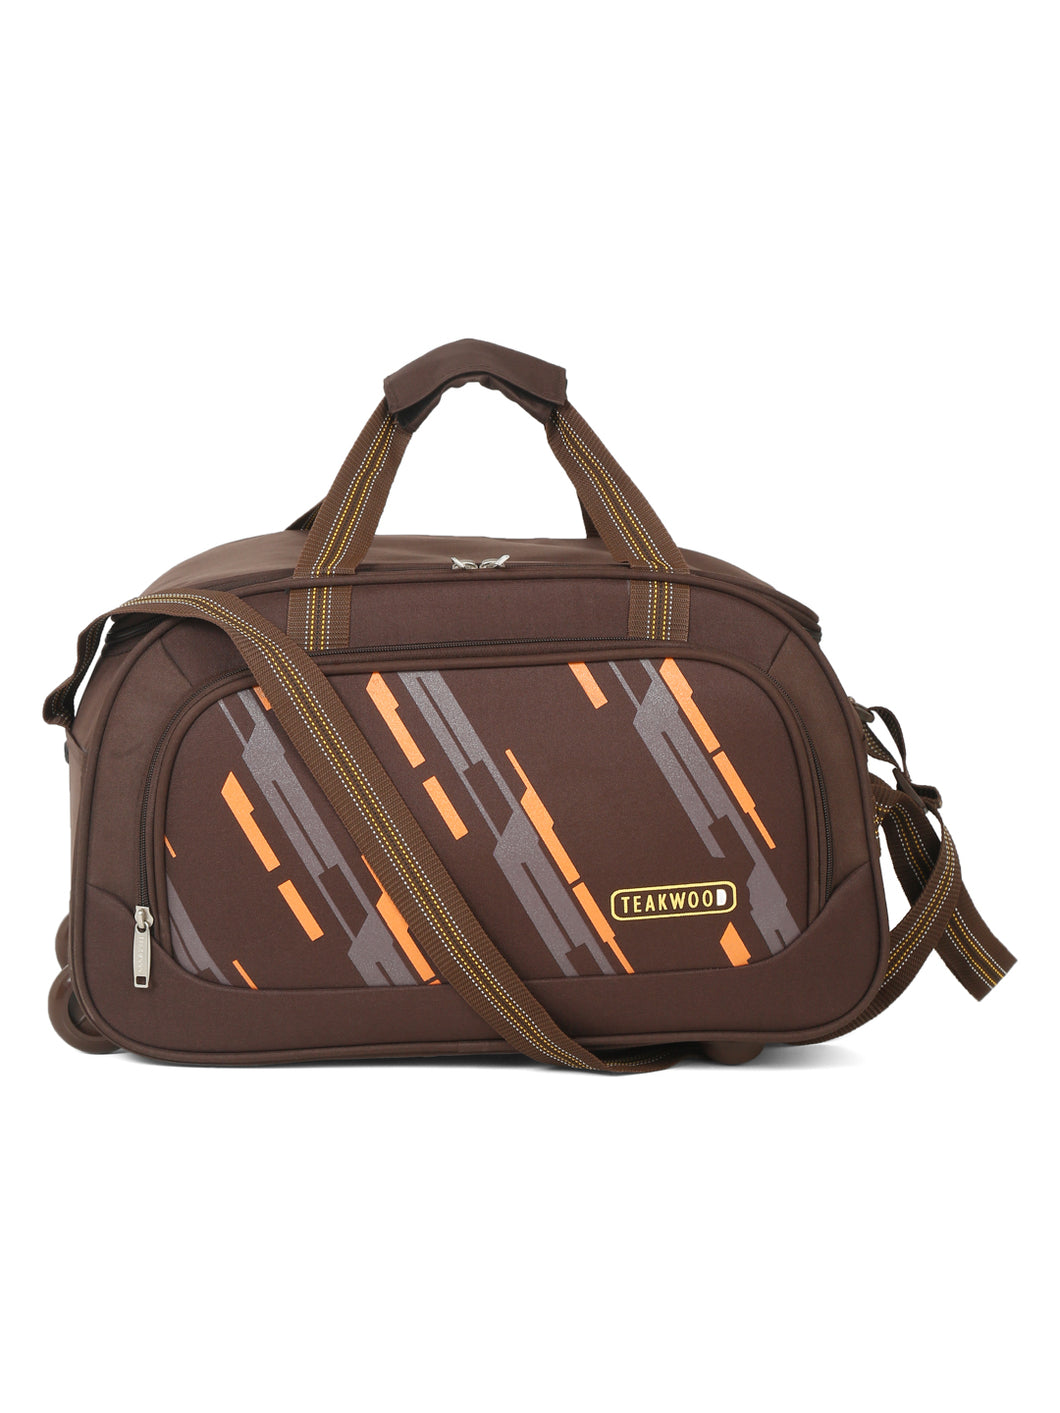 Teakwood Leather Brown Printed Medium Duffle Bag